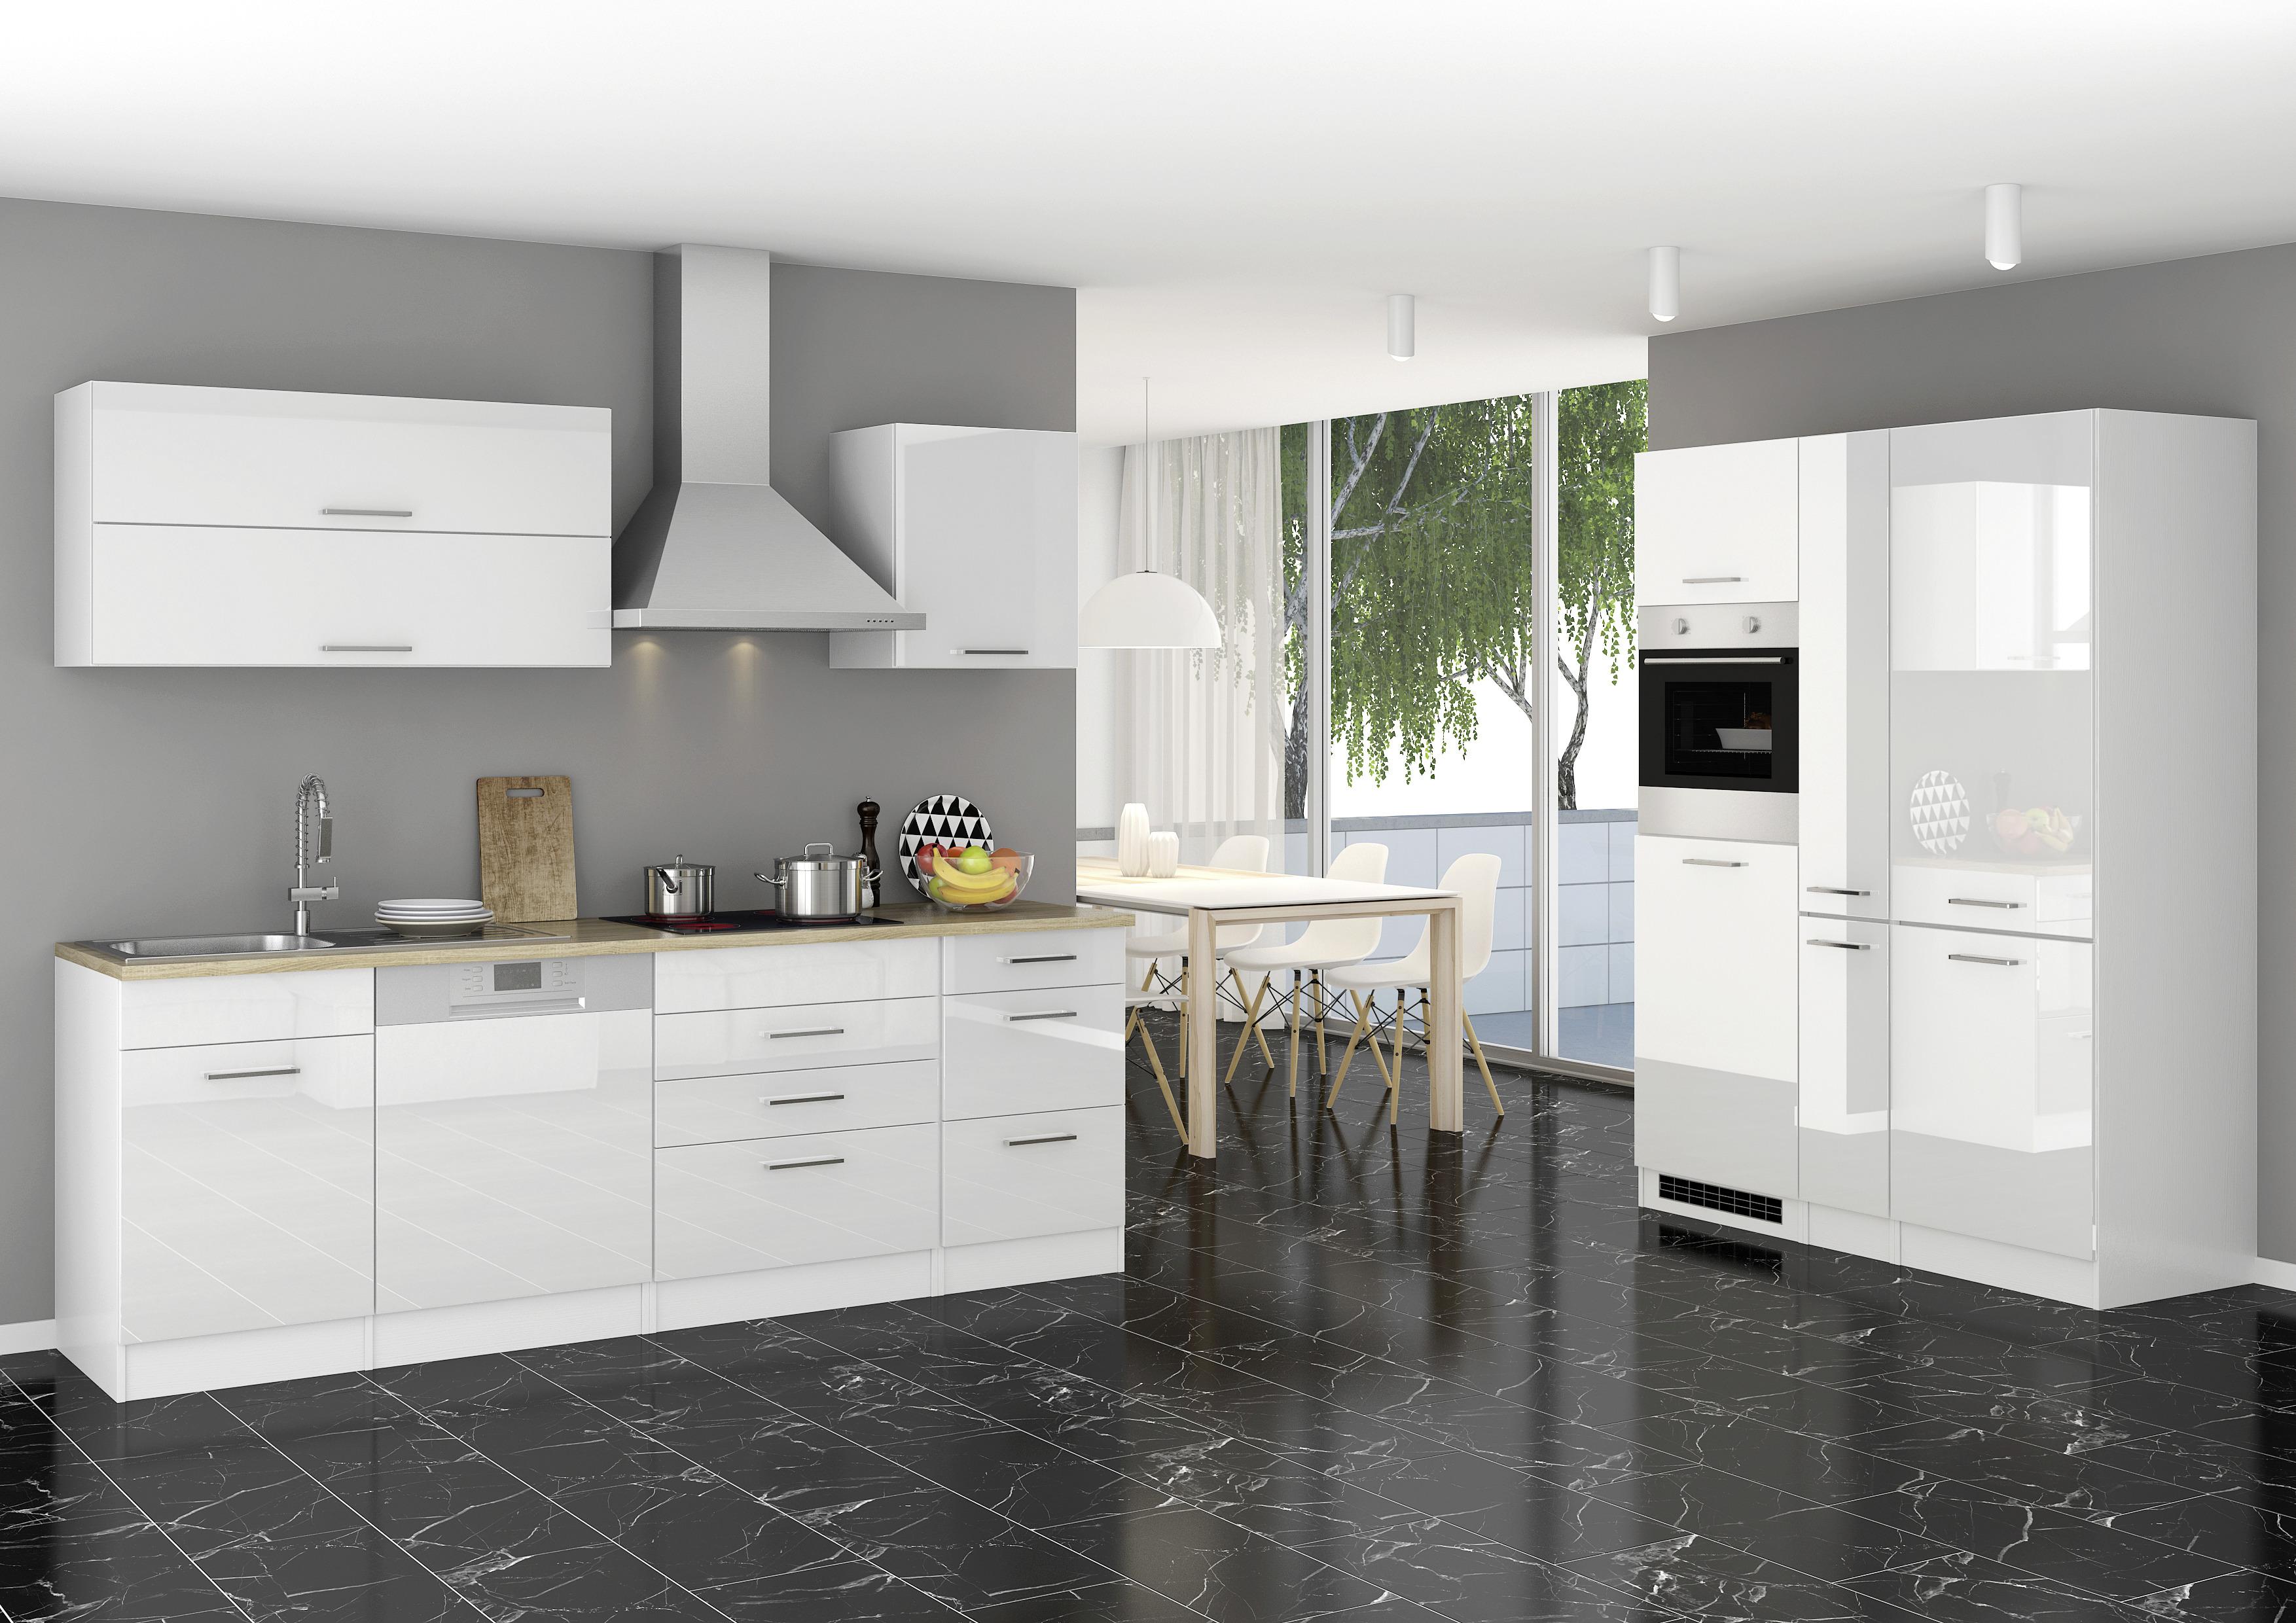 Küchenzeile Mailand mit Geräten 390 cm Weiß Hochglanz - Eichefarben/Weiß, MODERN, Holzwerkstoff (240/150cm) - MID.YOU